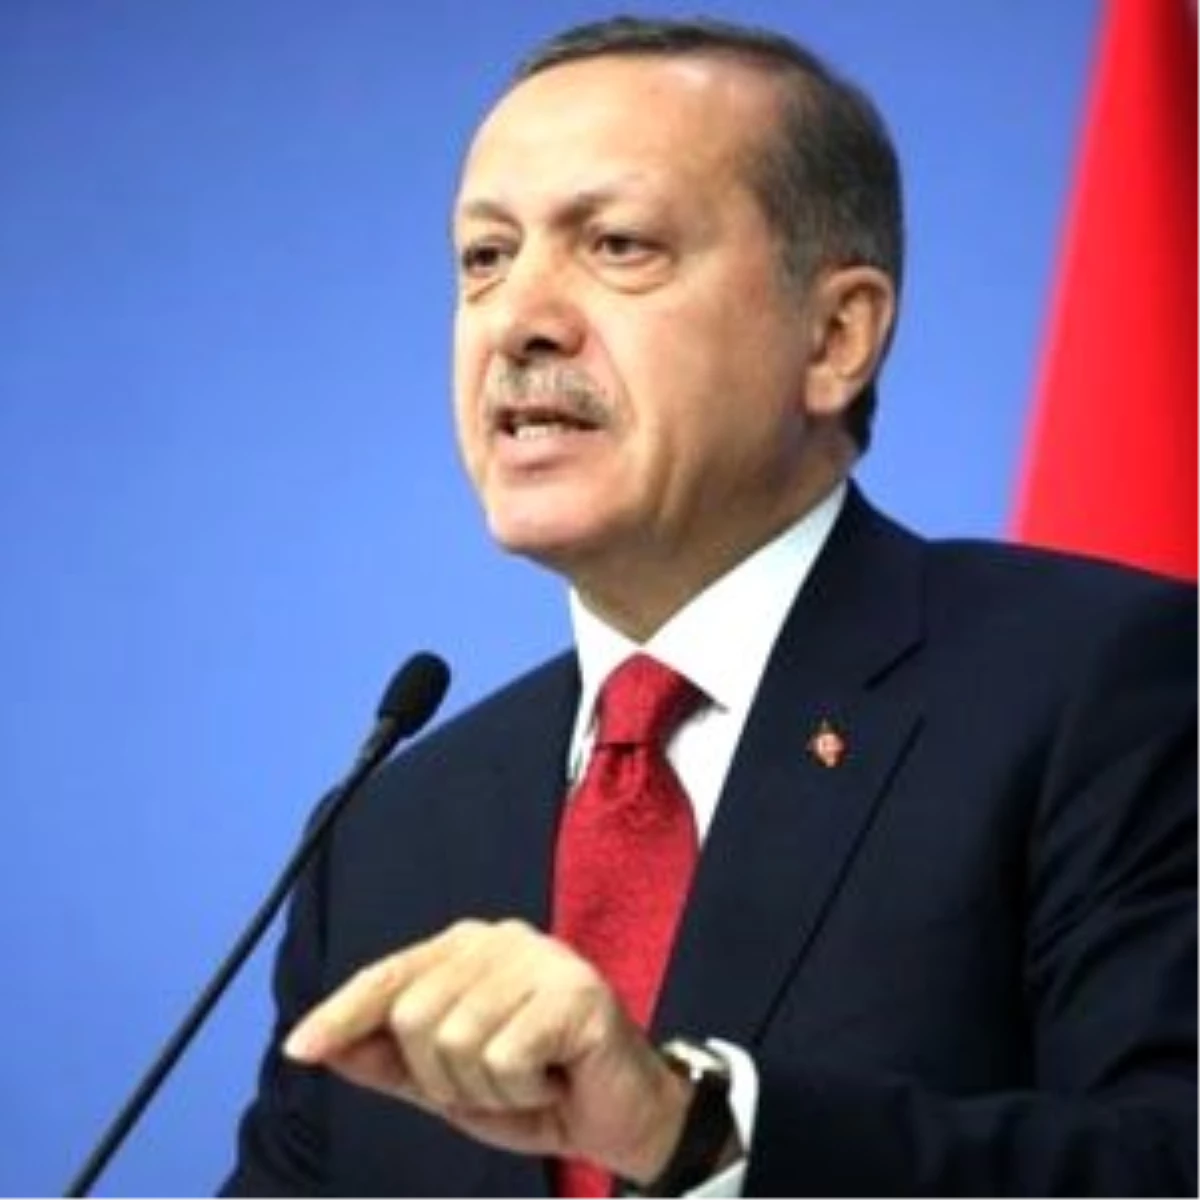 Başbakan Erdoğan(4): "Tarih Parlamentolarda Yazılmaz Çarpıtılır"